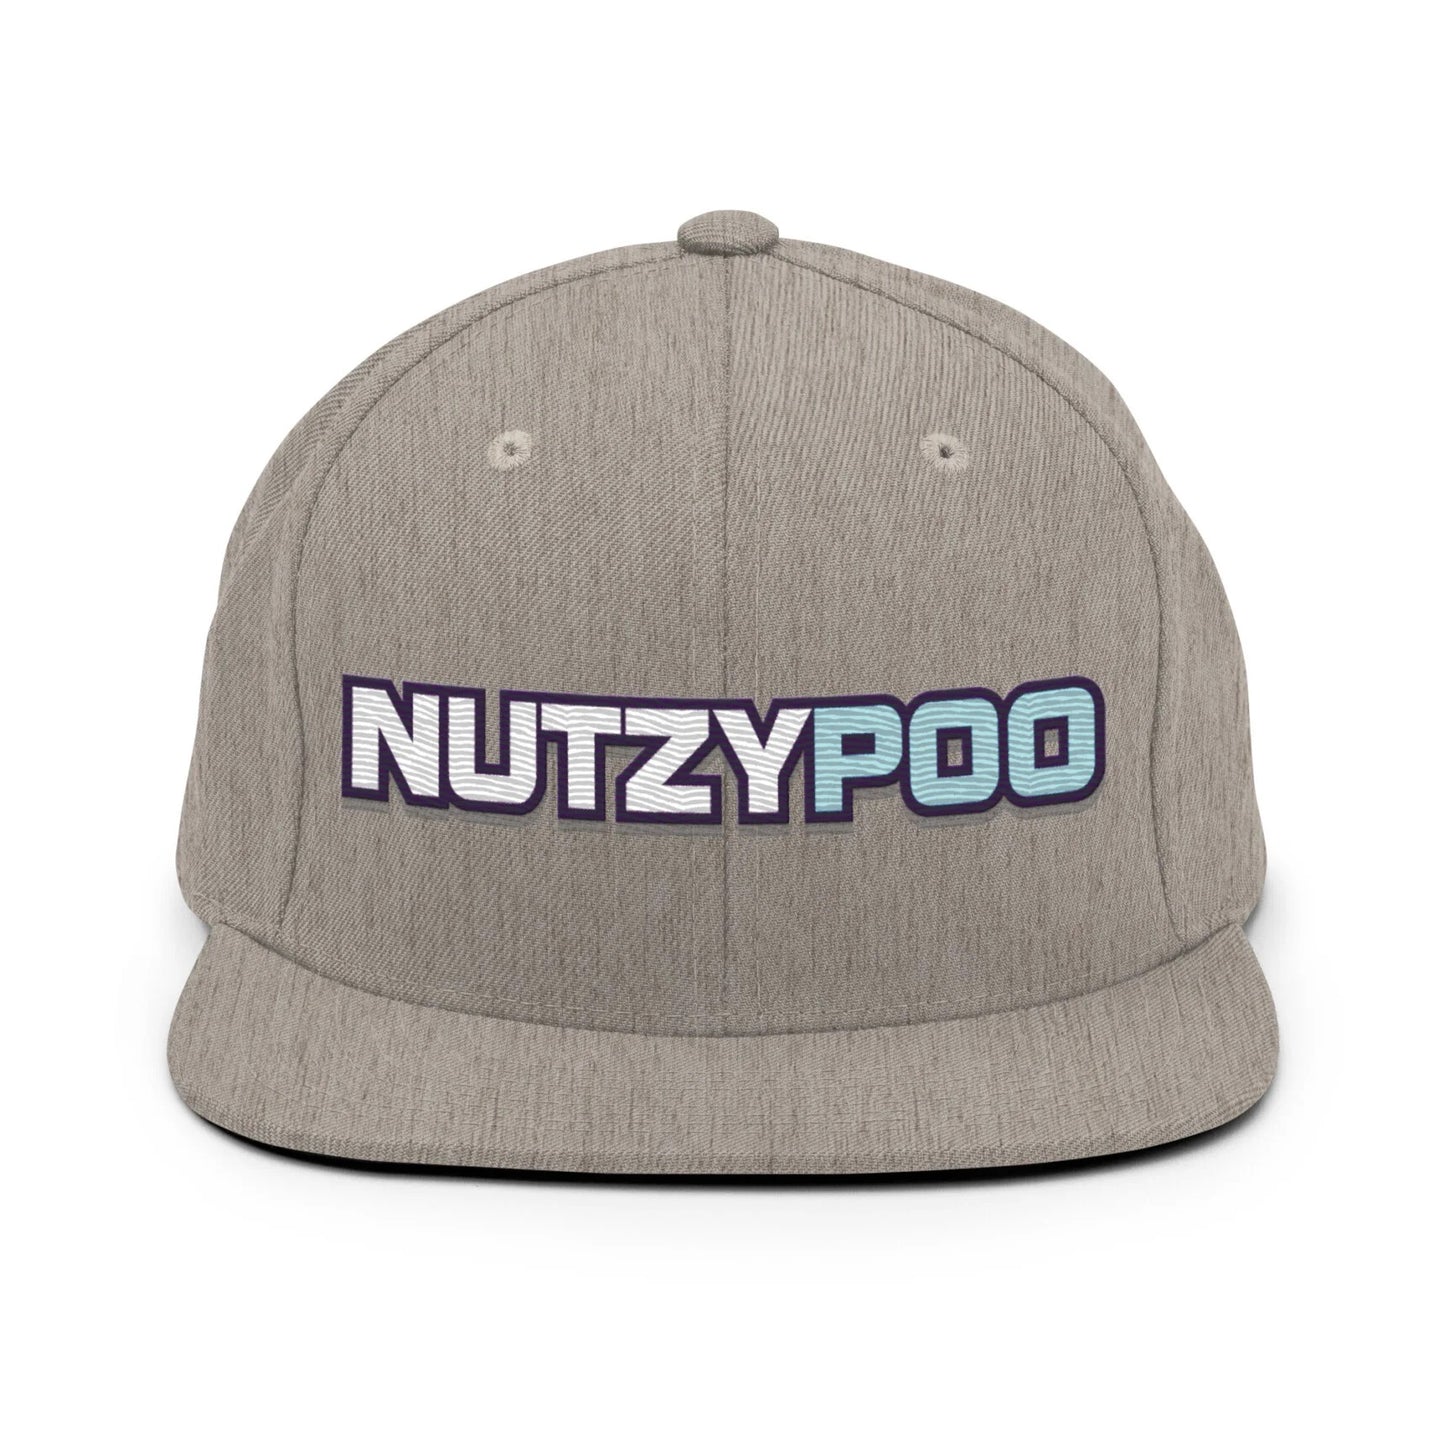 NutzyPoo ShowZone hat in heather grey